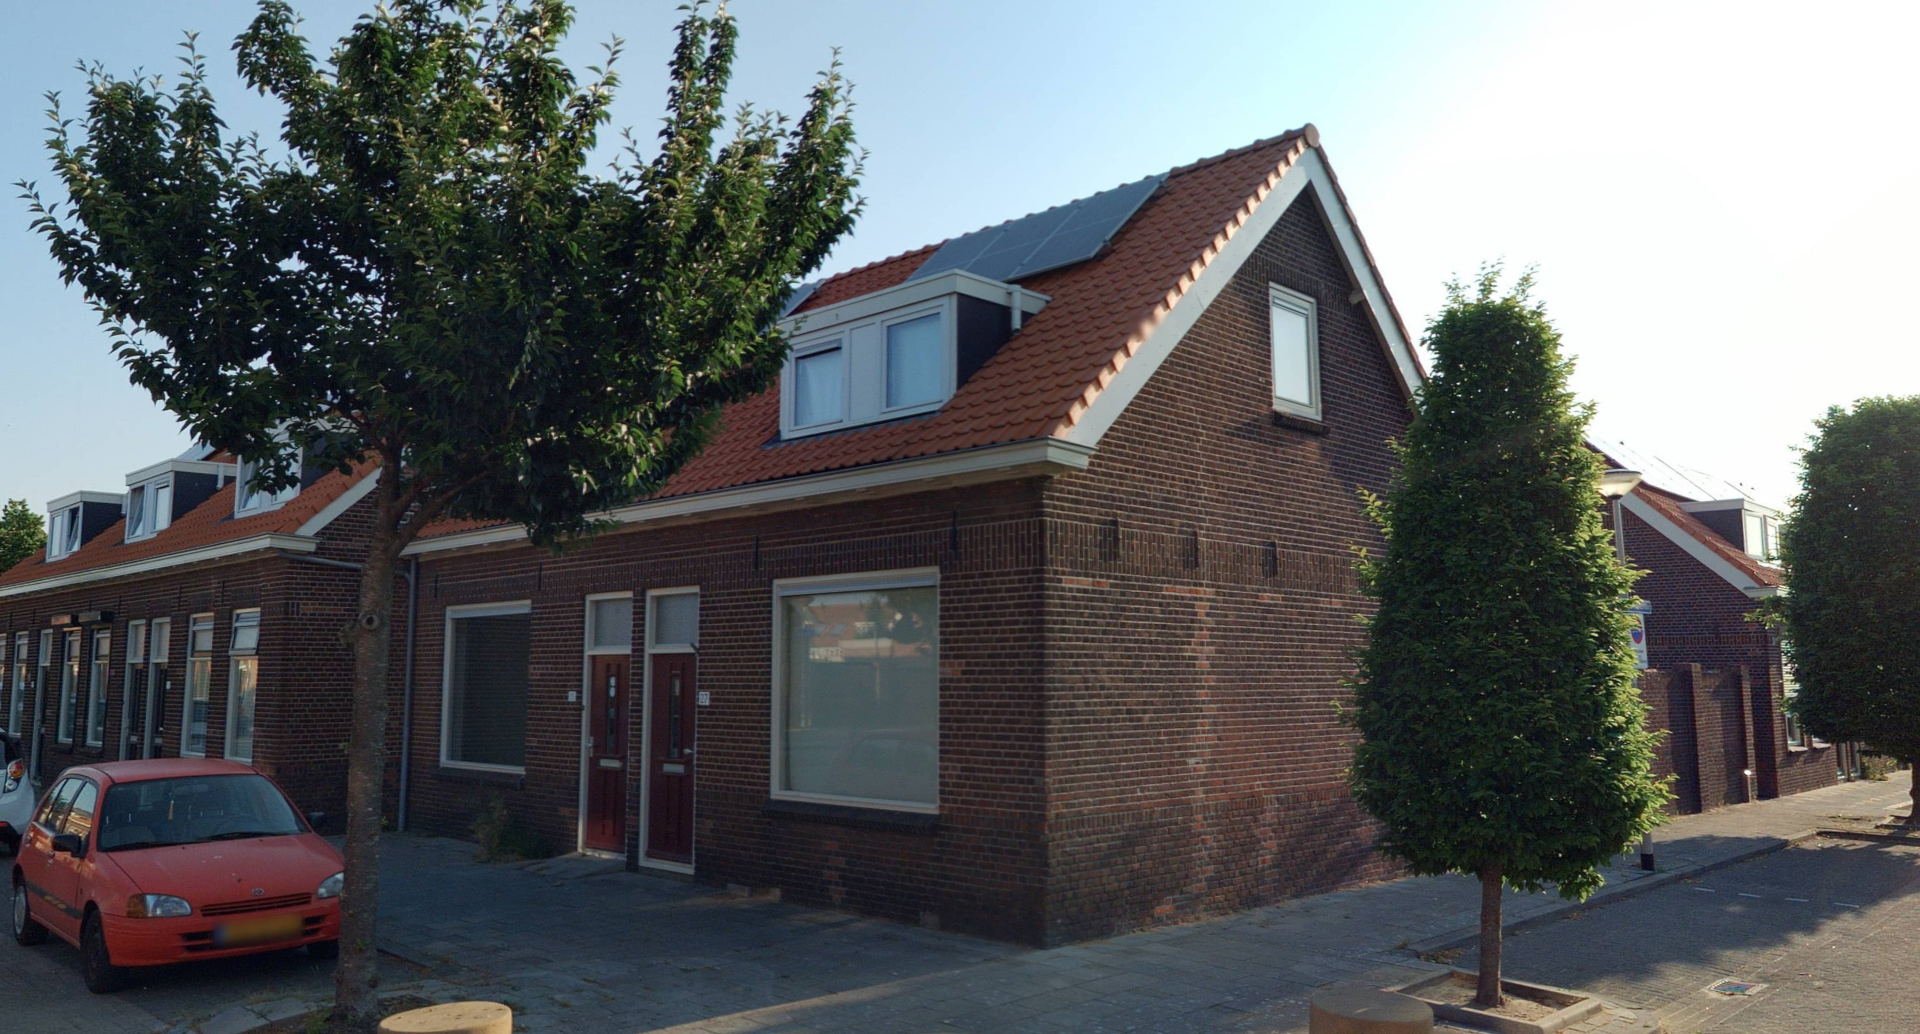 Willem van Oranjestraat 27, 4615 JE Bergen op Zoom, Nederland